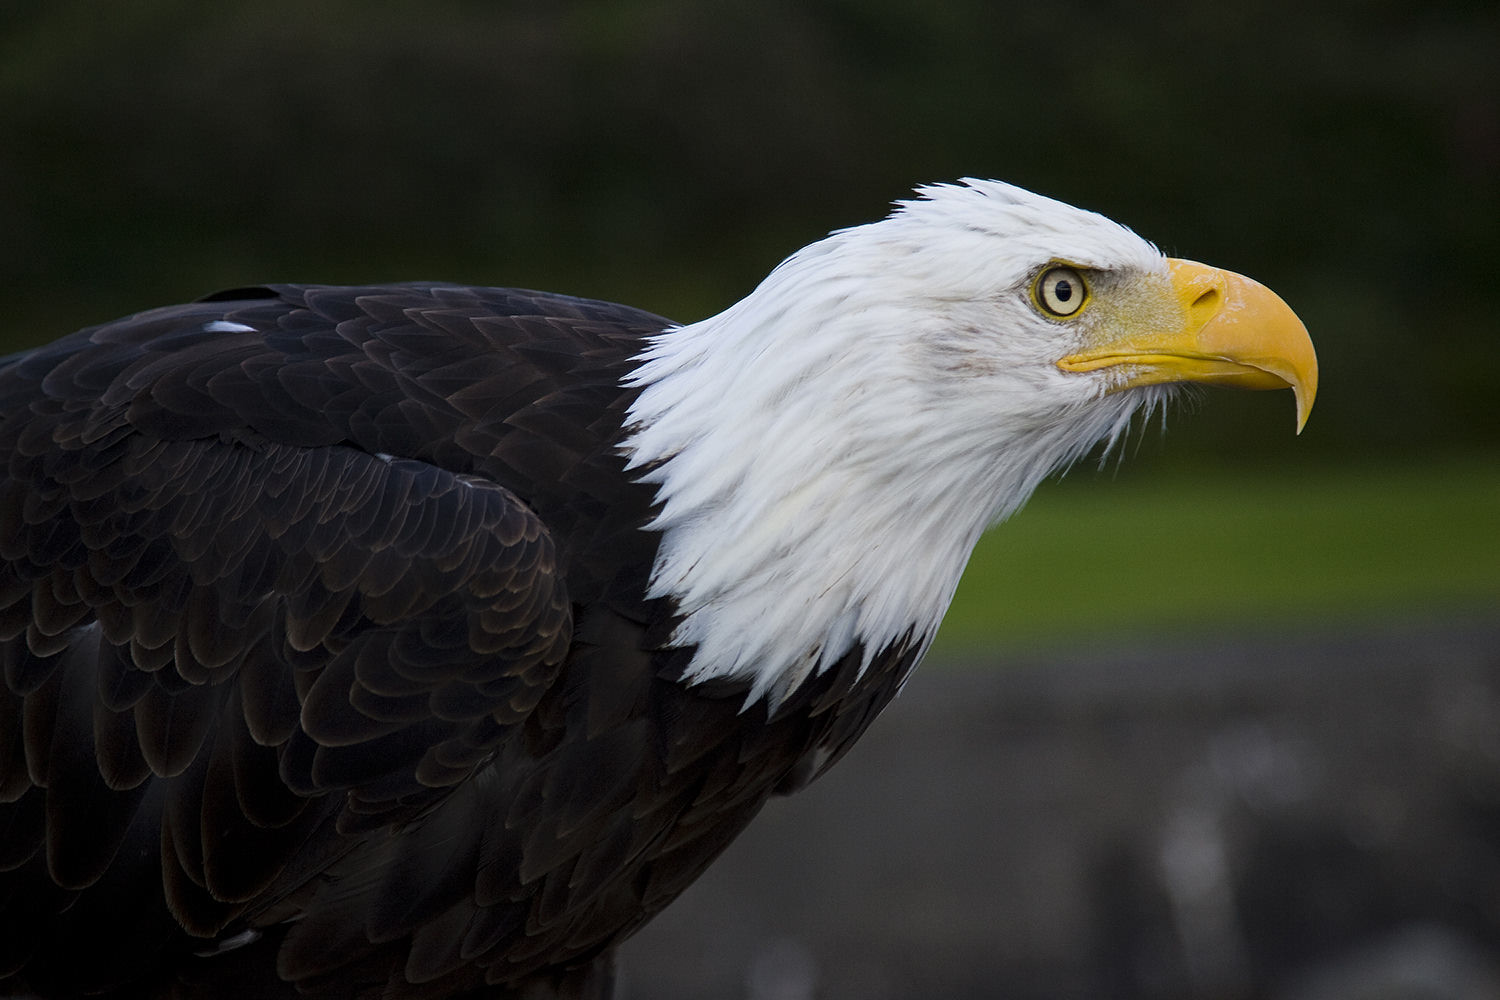 Bald eagles make soaring comeback - HoustonChronicle.com1500 x 1000